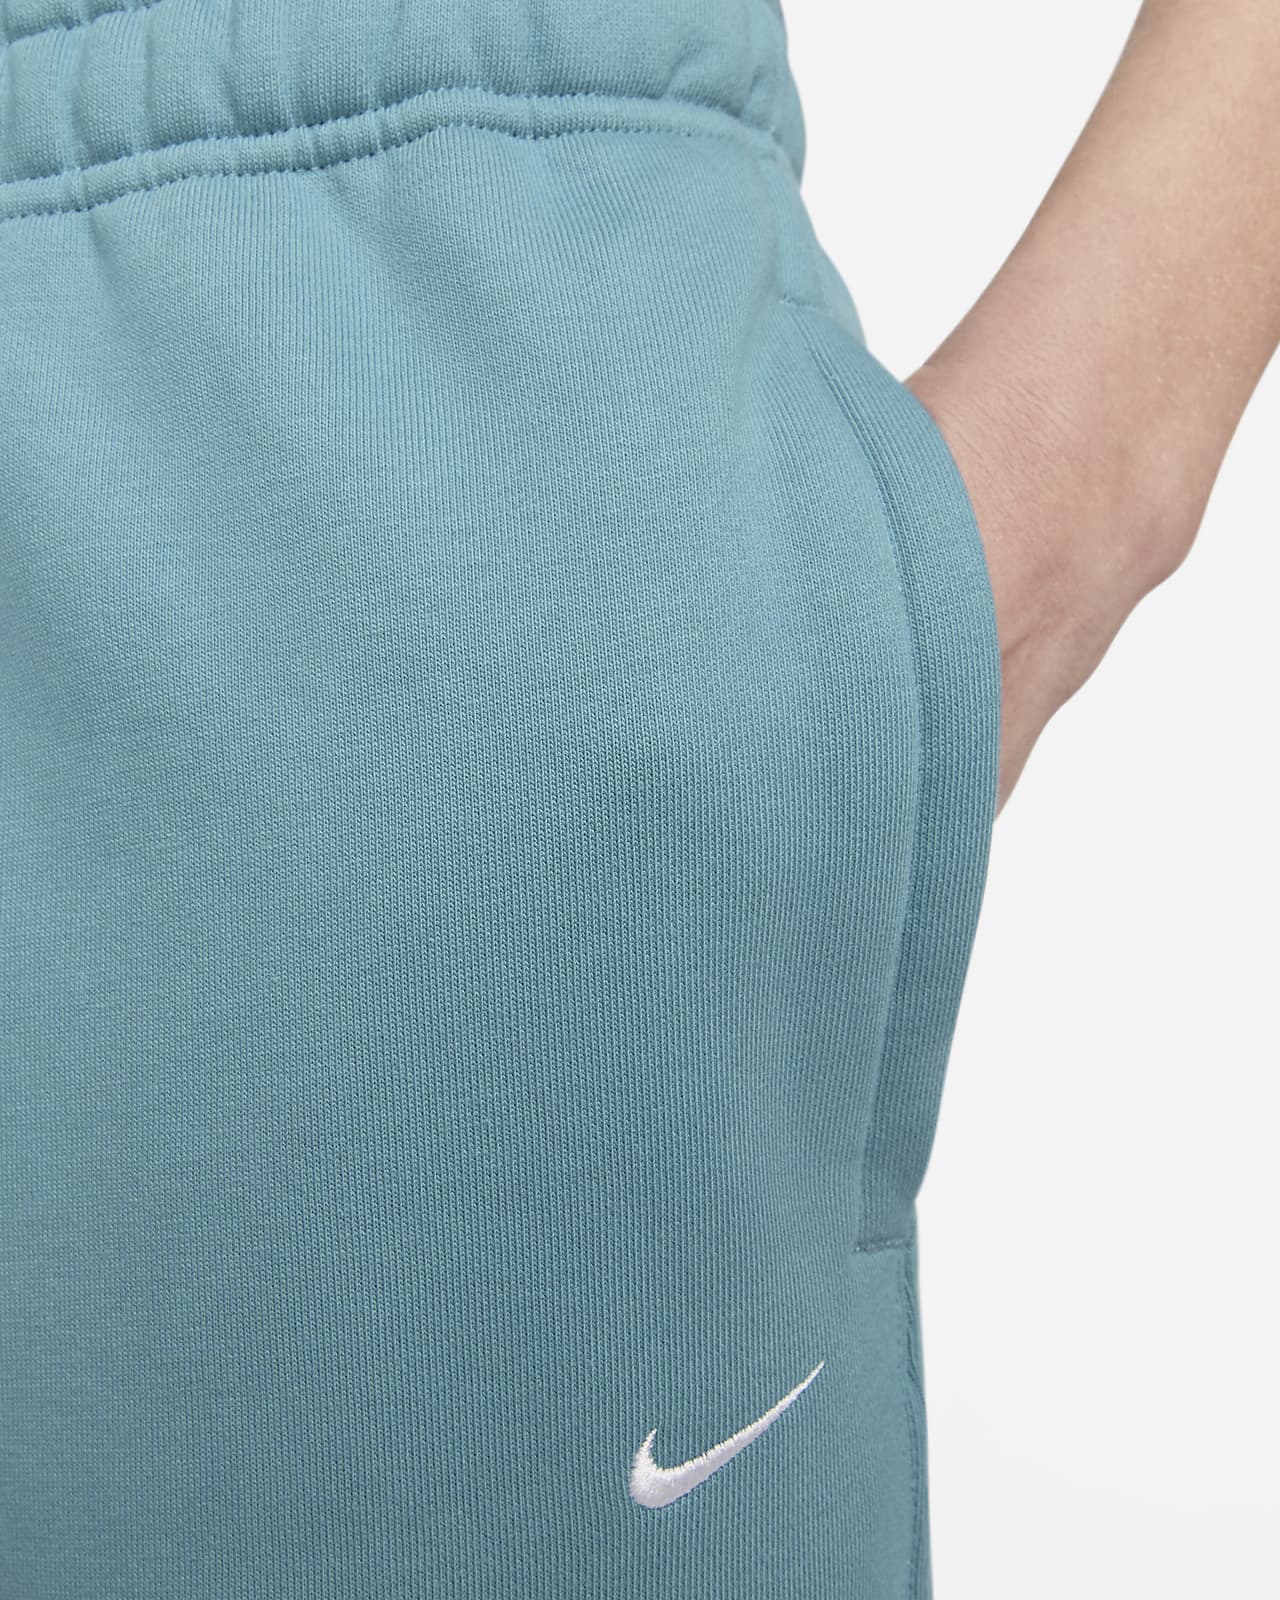 Nike NRG Solo Swoosh Women's Fleece Pants Bege CW5565-320